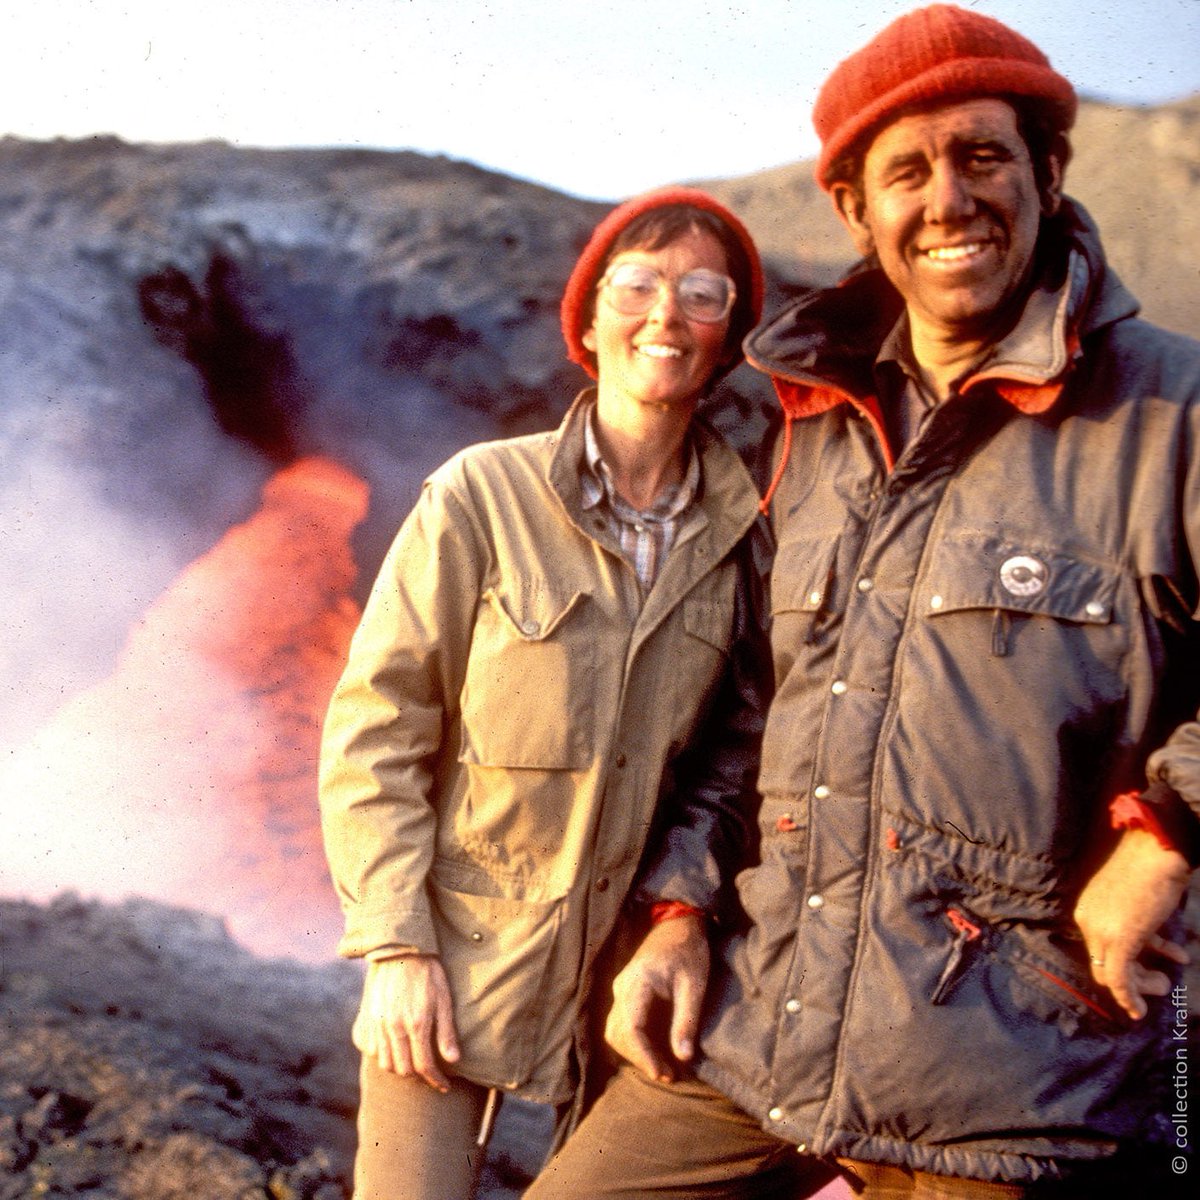 Katia et Maurice Krafft sont deux vulcanologues français qui ont péri lors de l’éruption du Mont Unzen au Japon. Gorgés d'une passion dévorante, ils ont parcouru ensemble le monde pour filmer et documenter les cratères actifs de la planète. Fil sur un destin tragique. 1/12